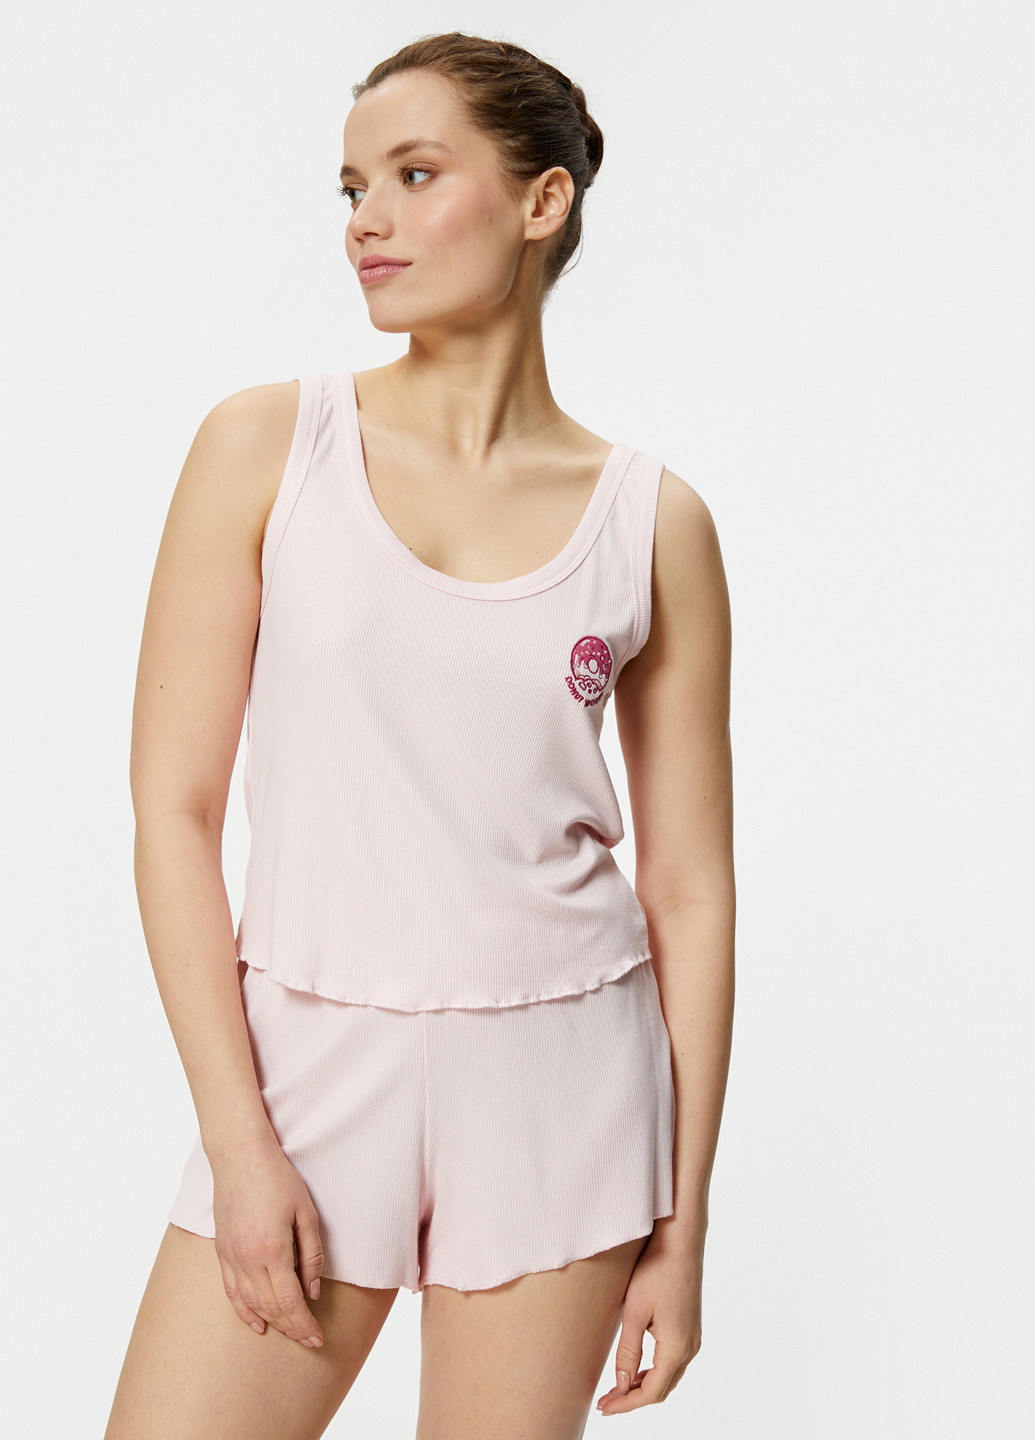 Светло-розовая всесезон пижама (майка, шорты) майка + шорты KOTON